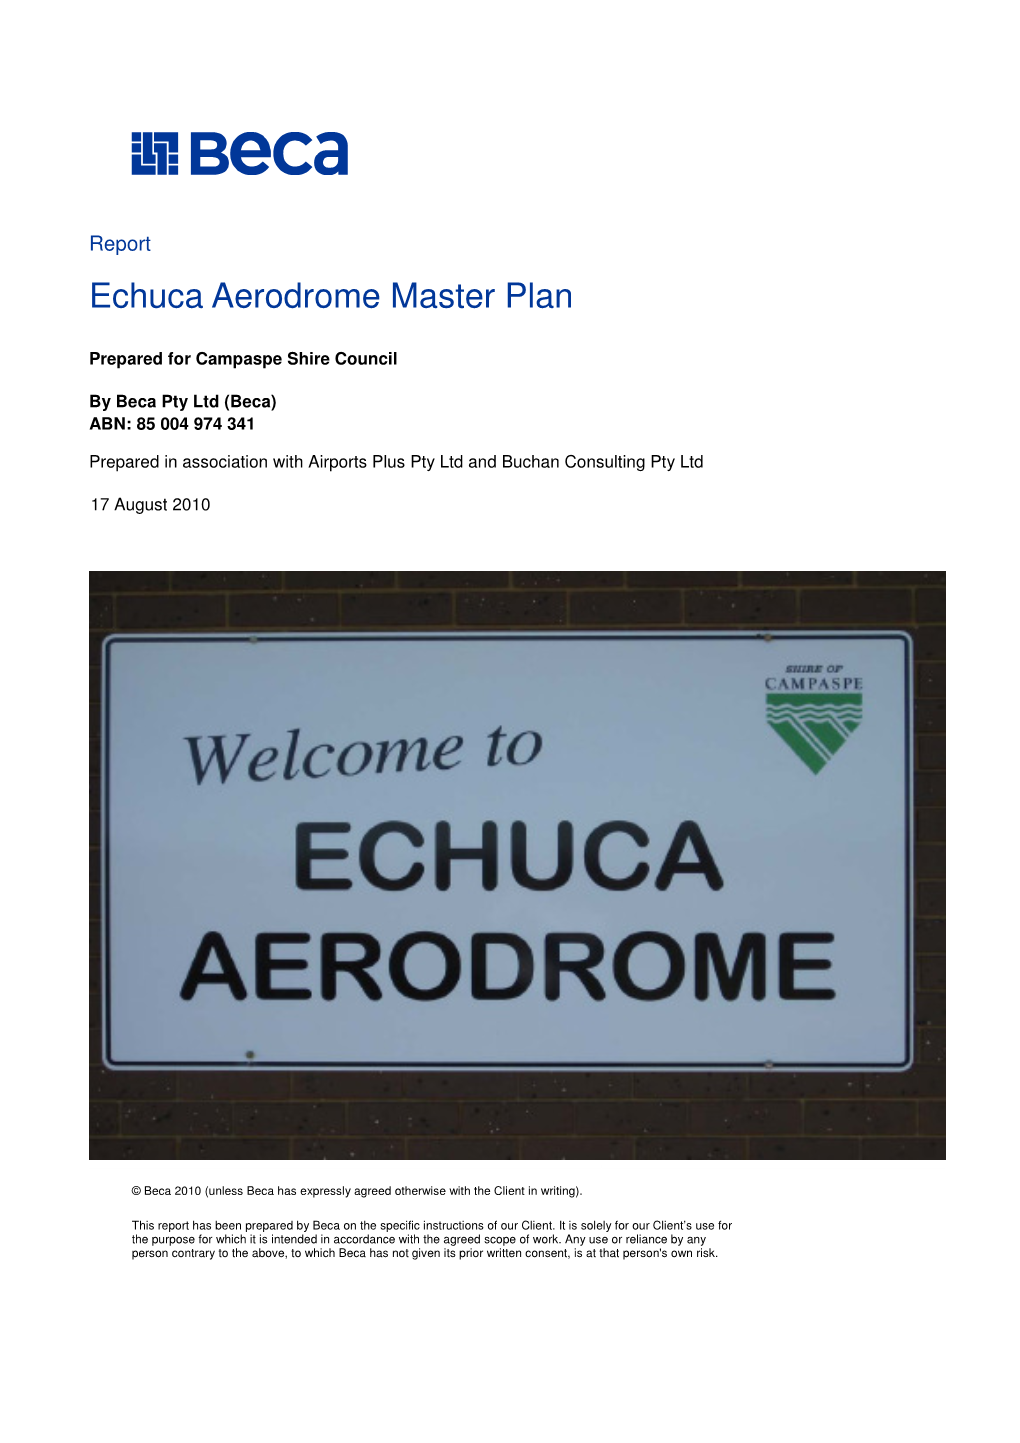 Echuca Aerodrome Master Plan